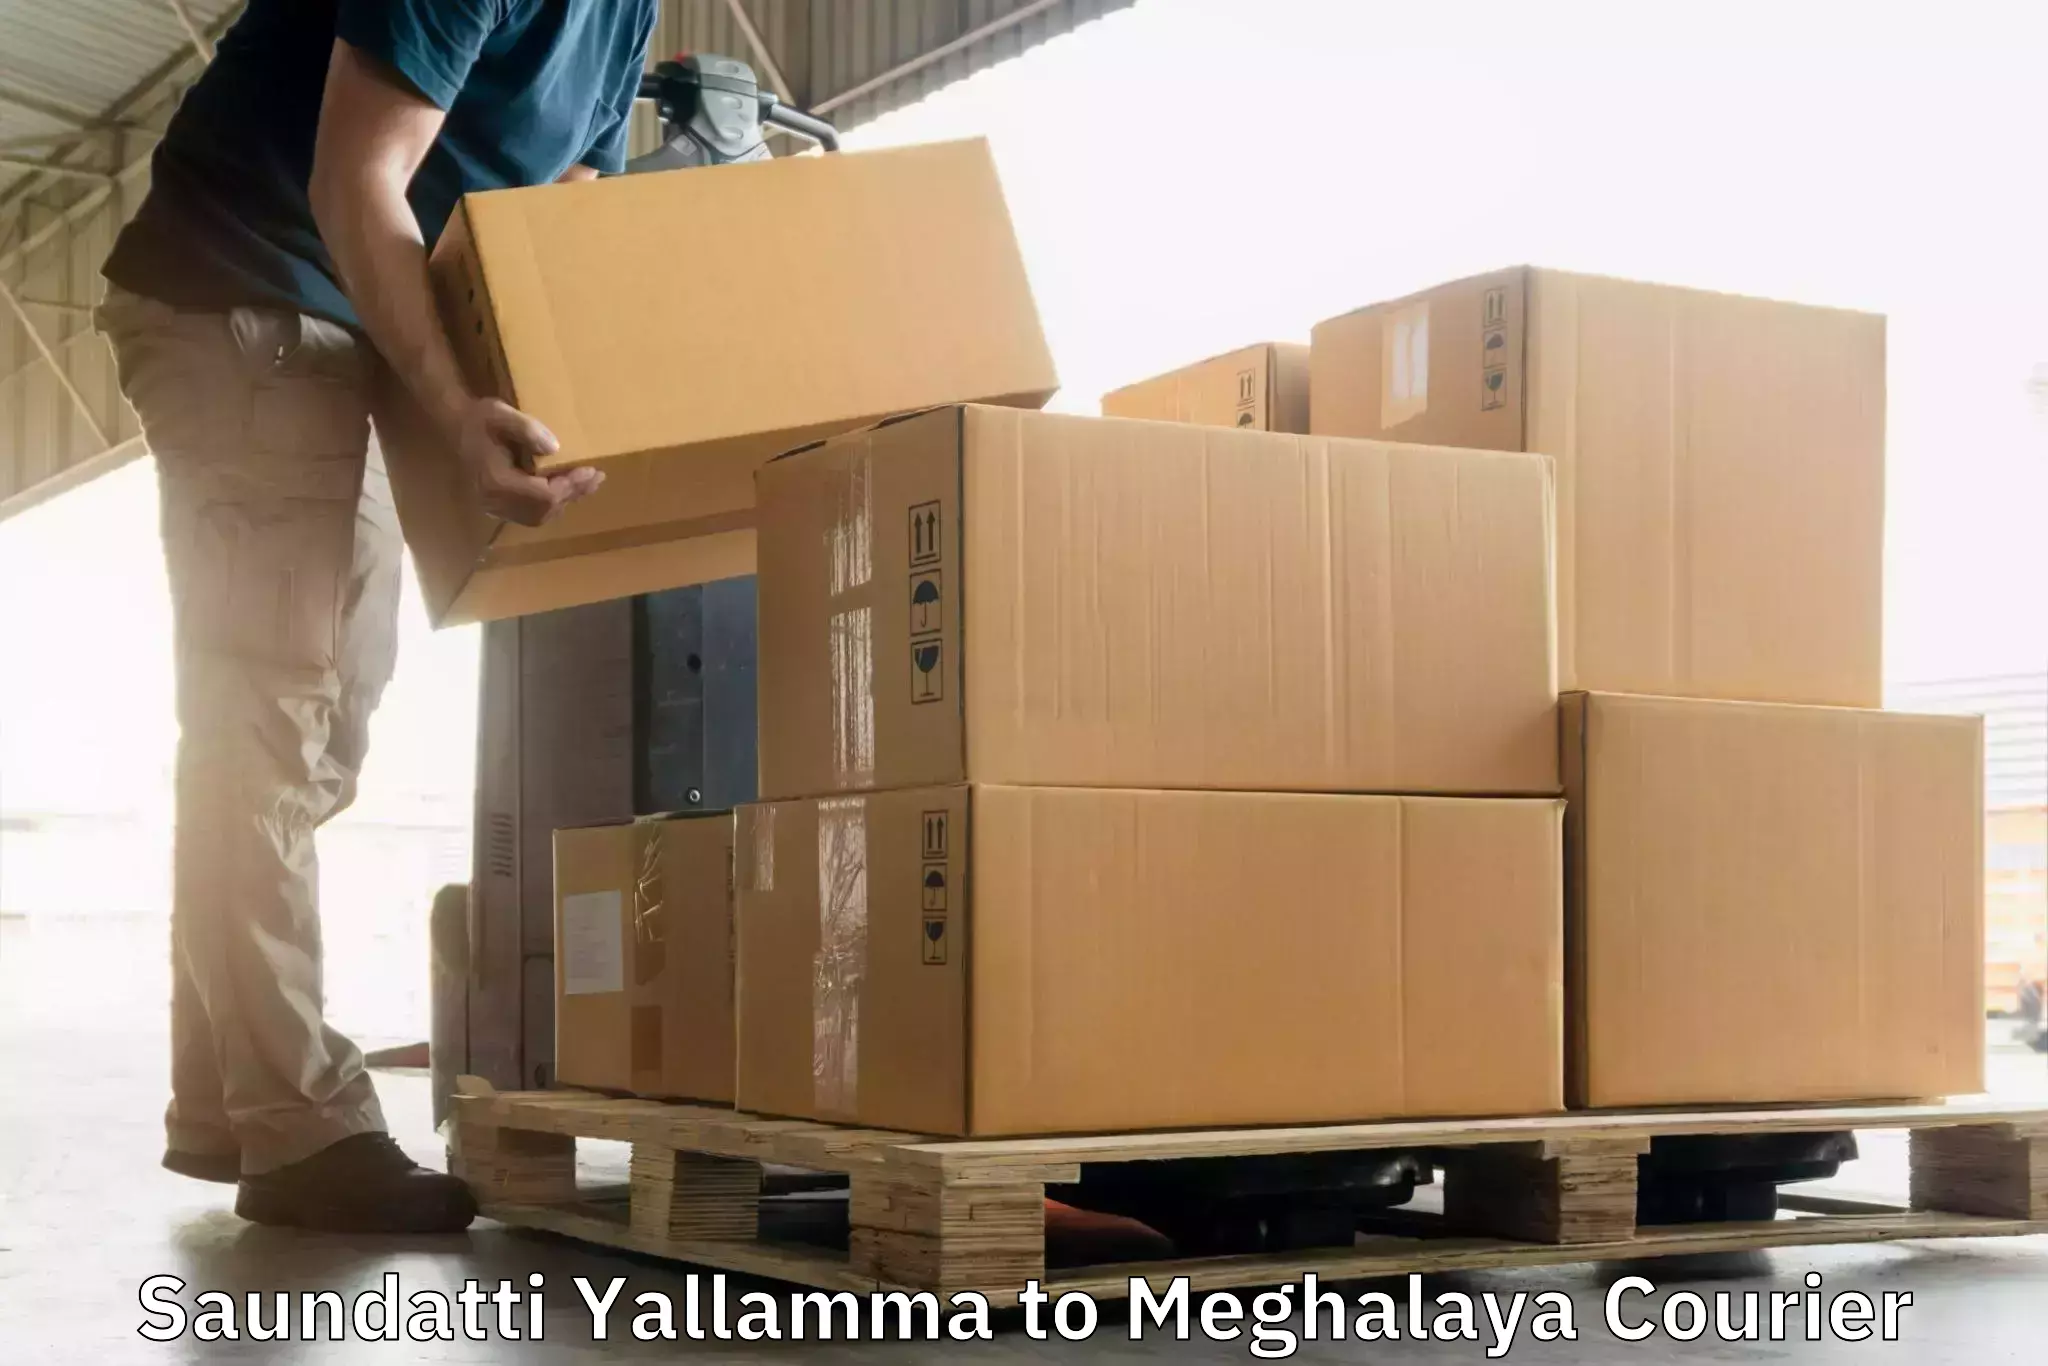 Advanced shipping technology Saundatti Yallamma to Meghalaya